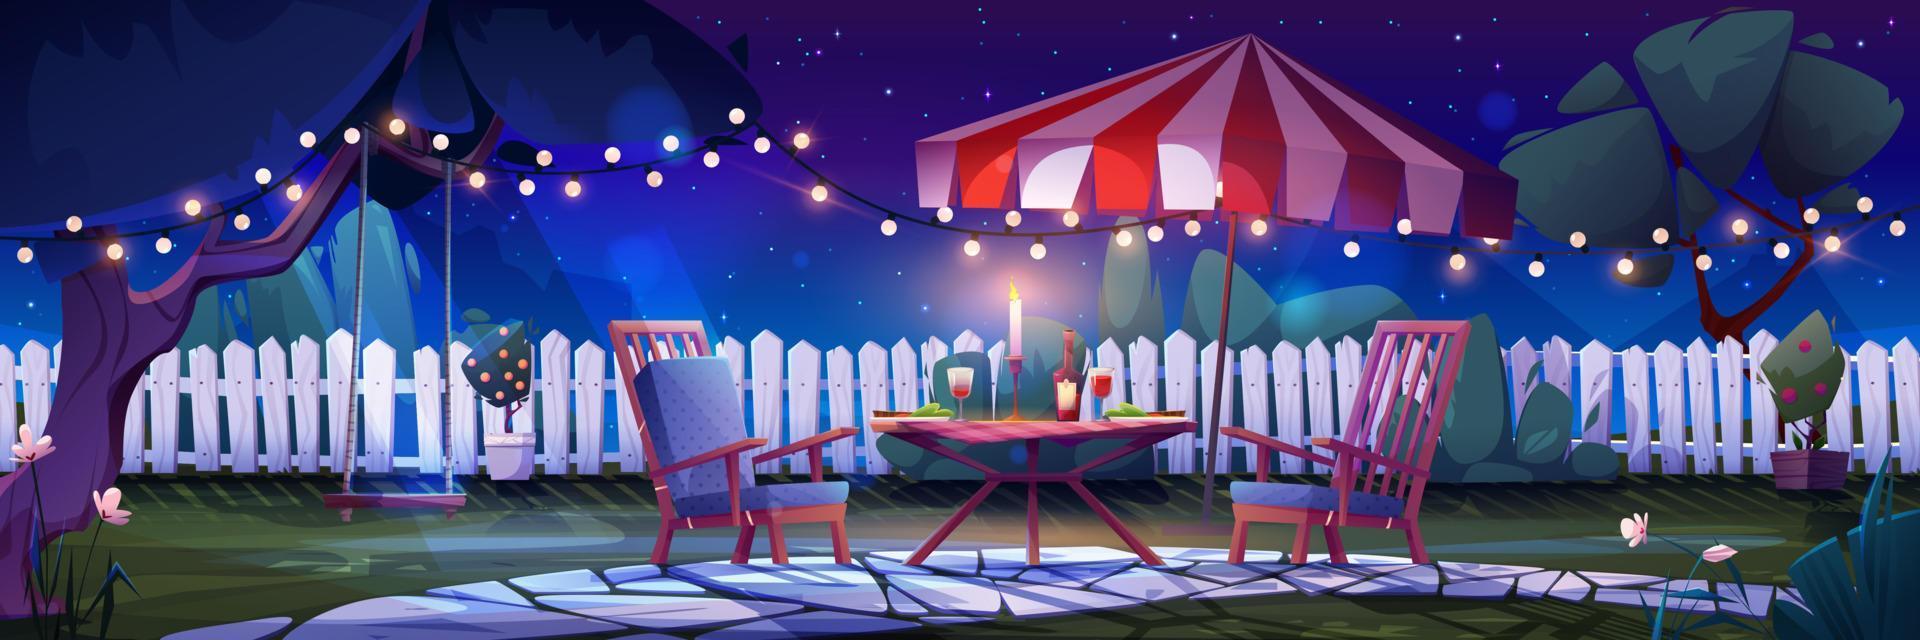 natt bakgård med romantisk fest för två vektor